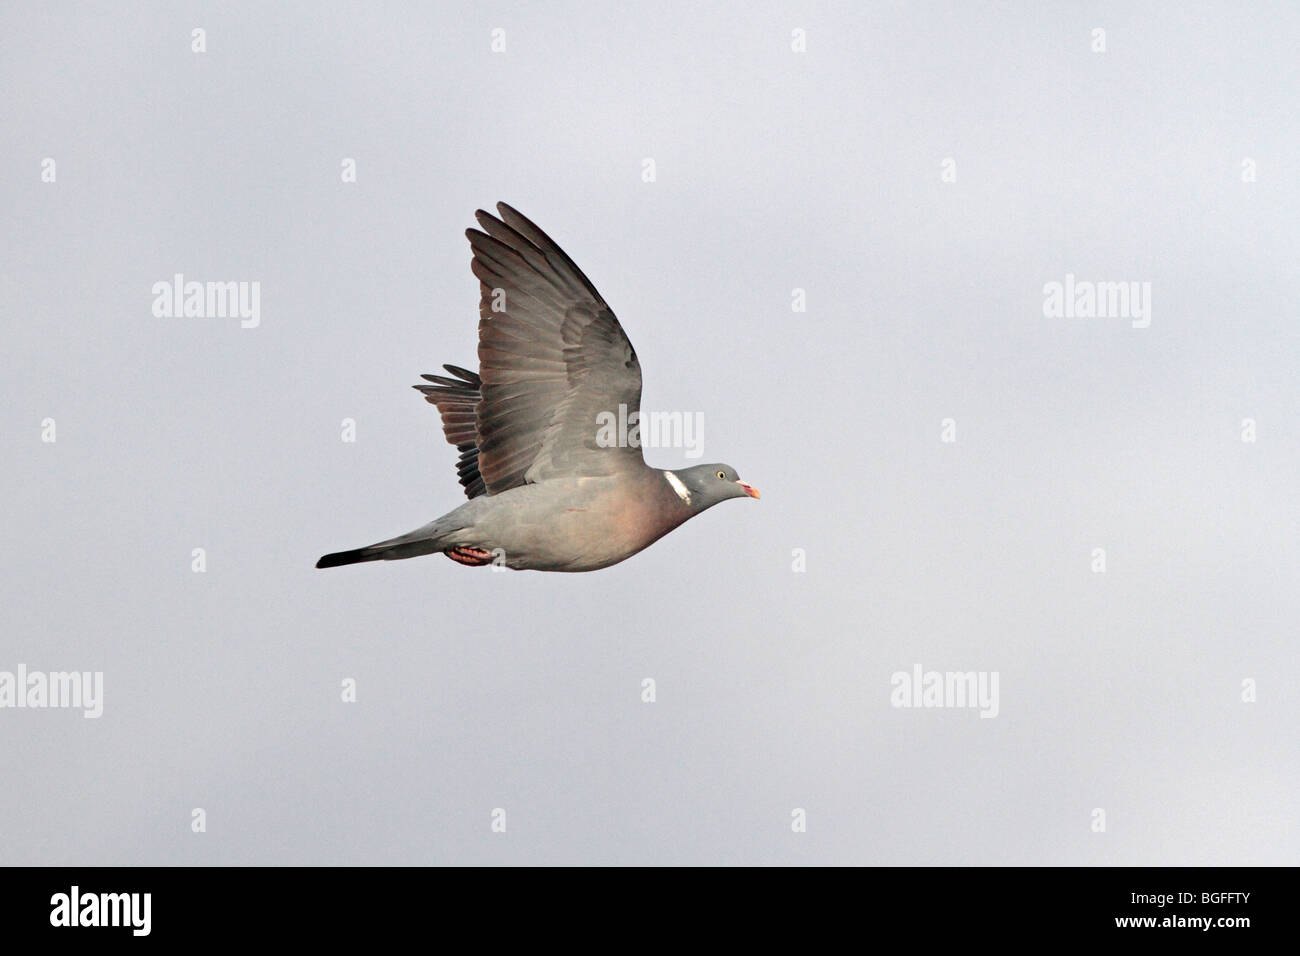 Common Woodpigeon flying Stock Photo